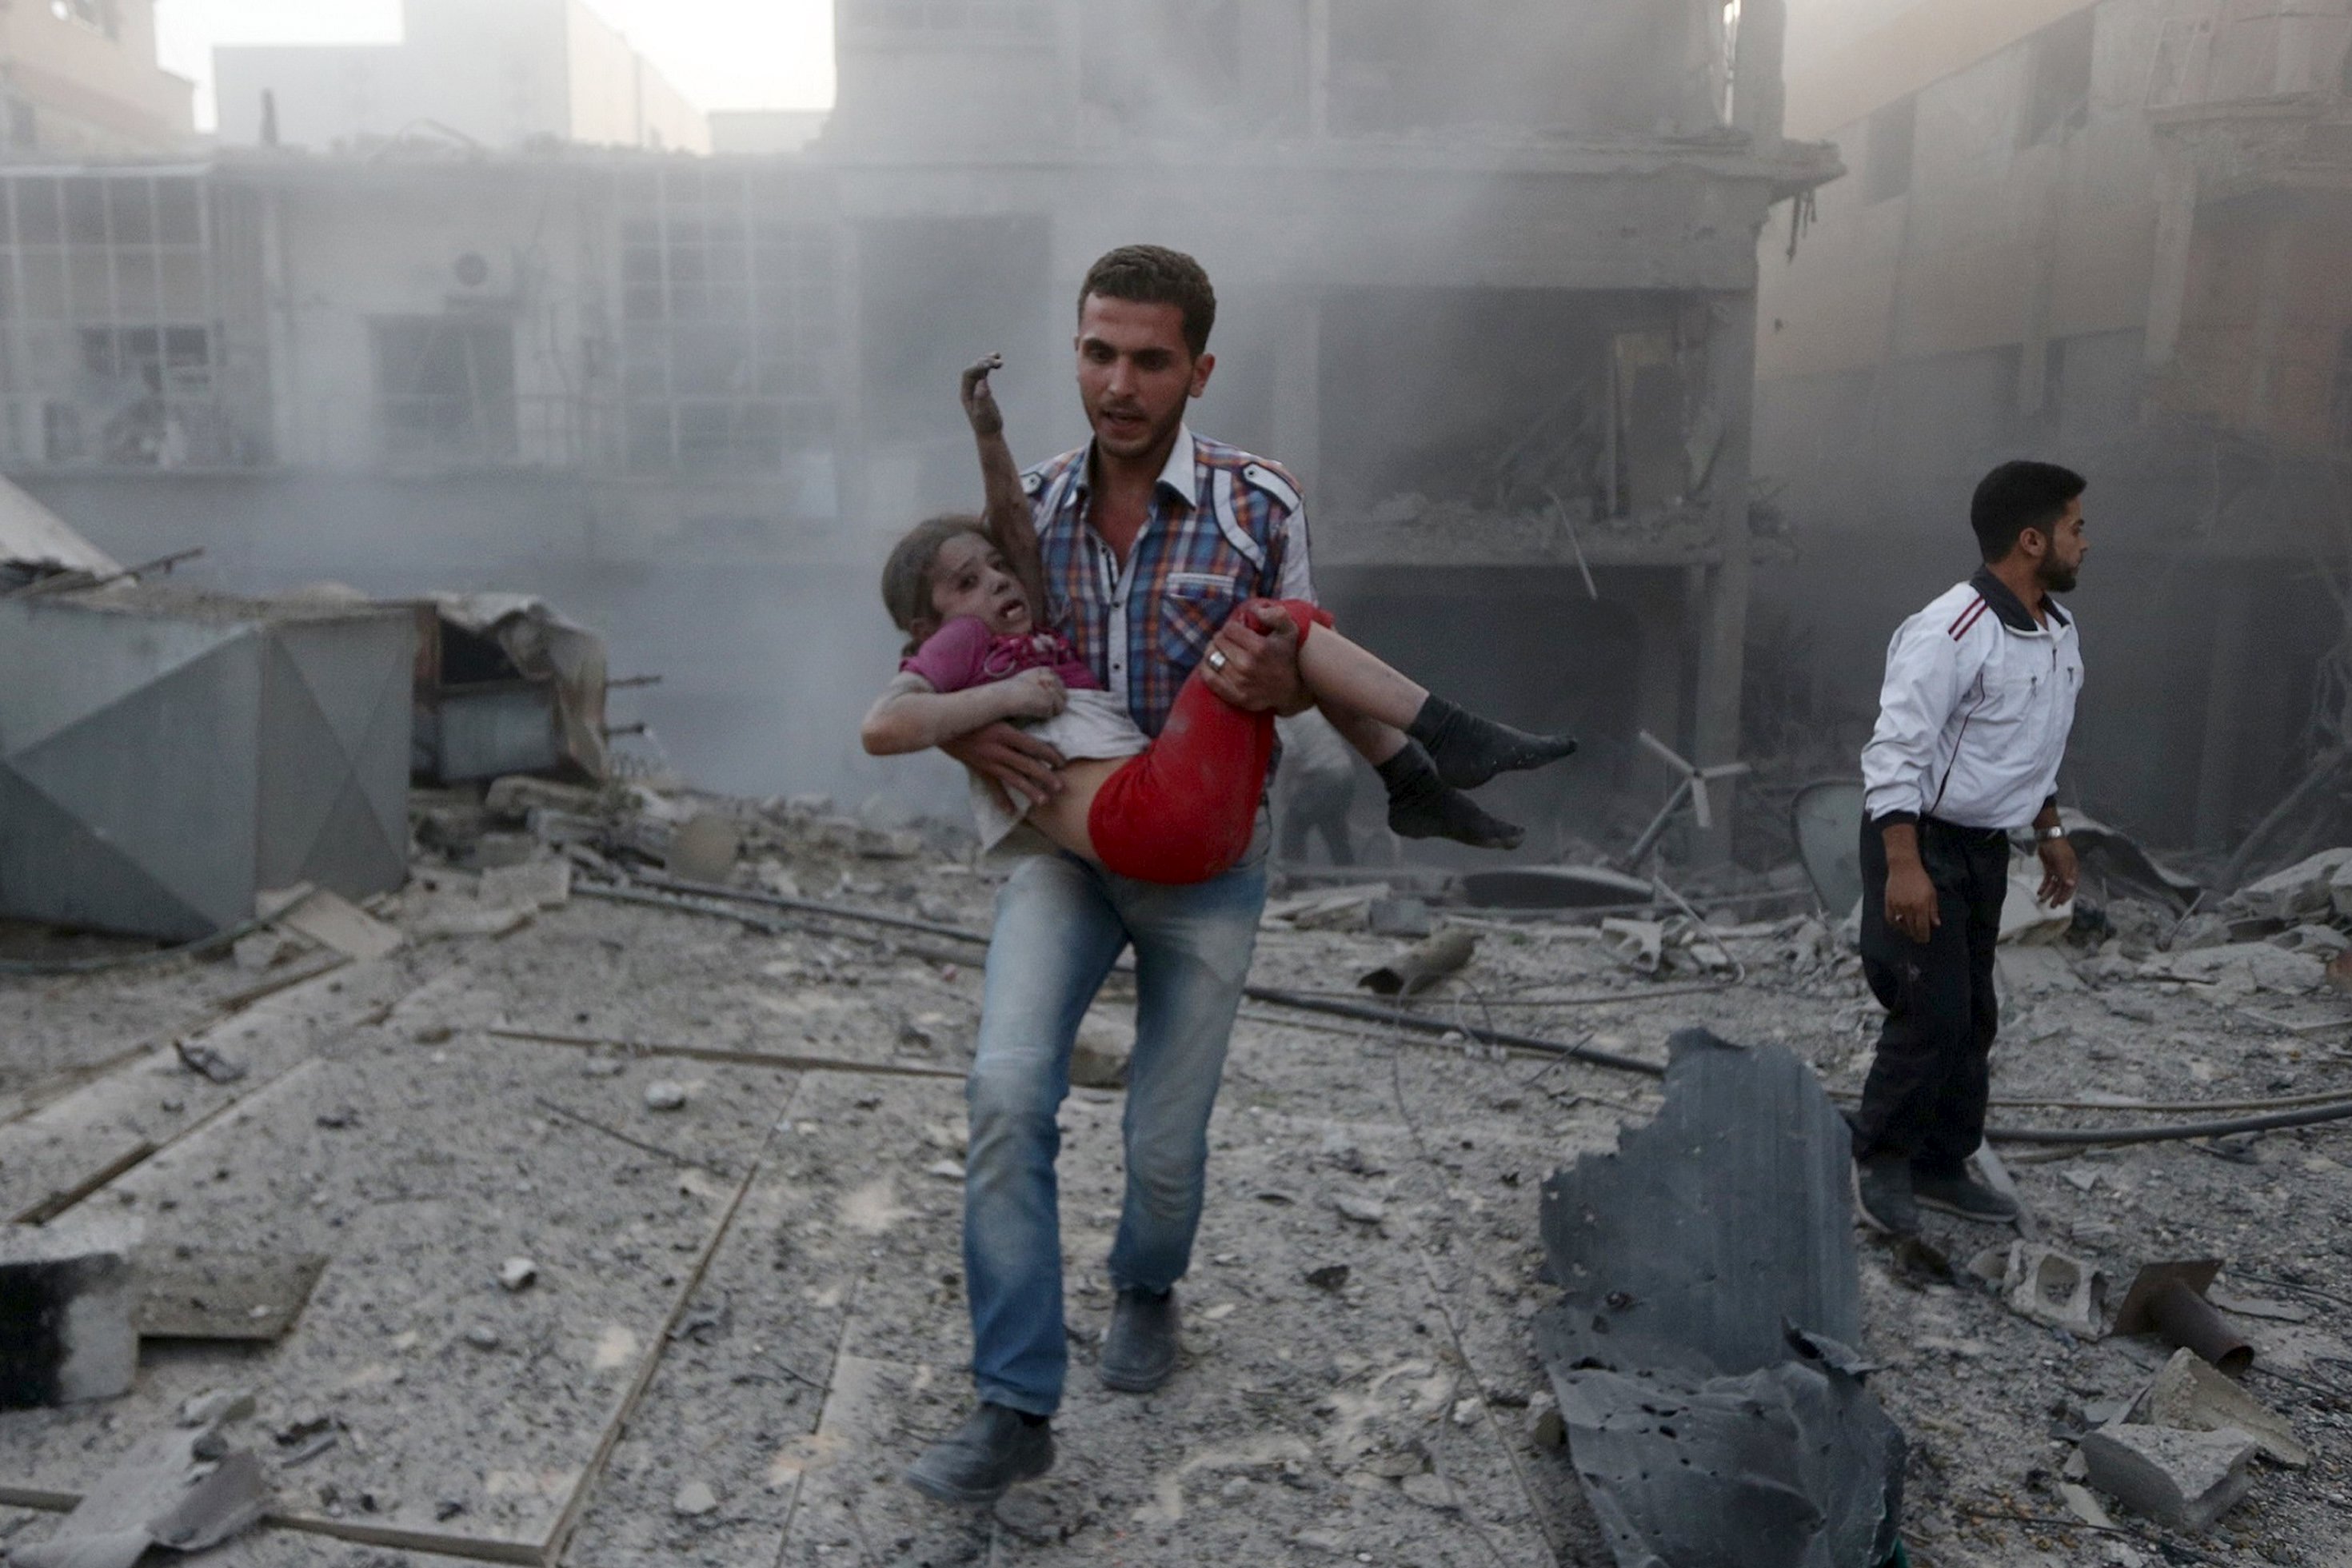 افشای نام عاملان اصلی جنایات بشری در سوریه بعد از چند سال / این تصاویر به راستی دلخراش است!